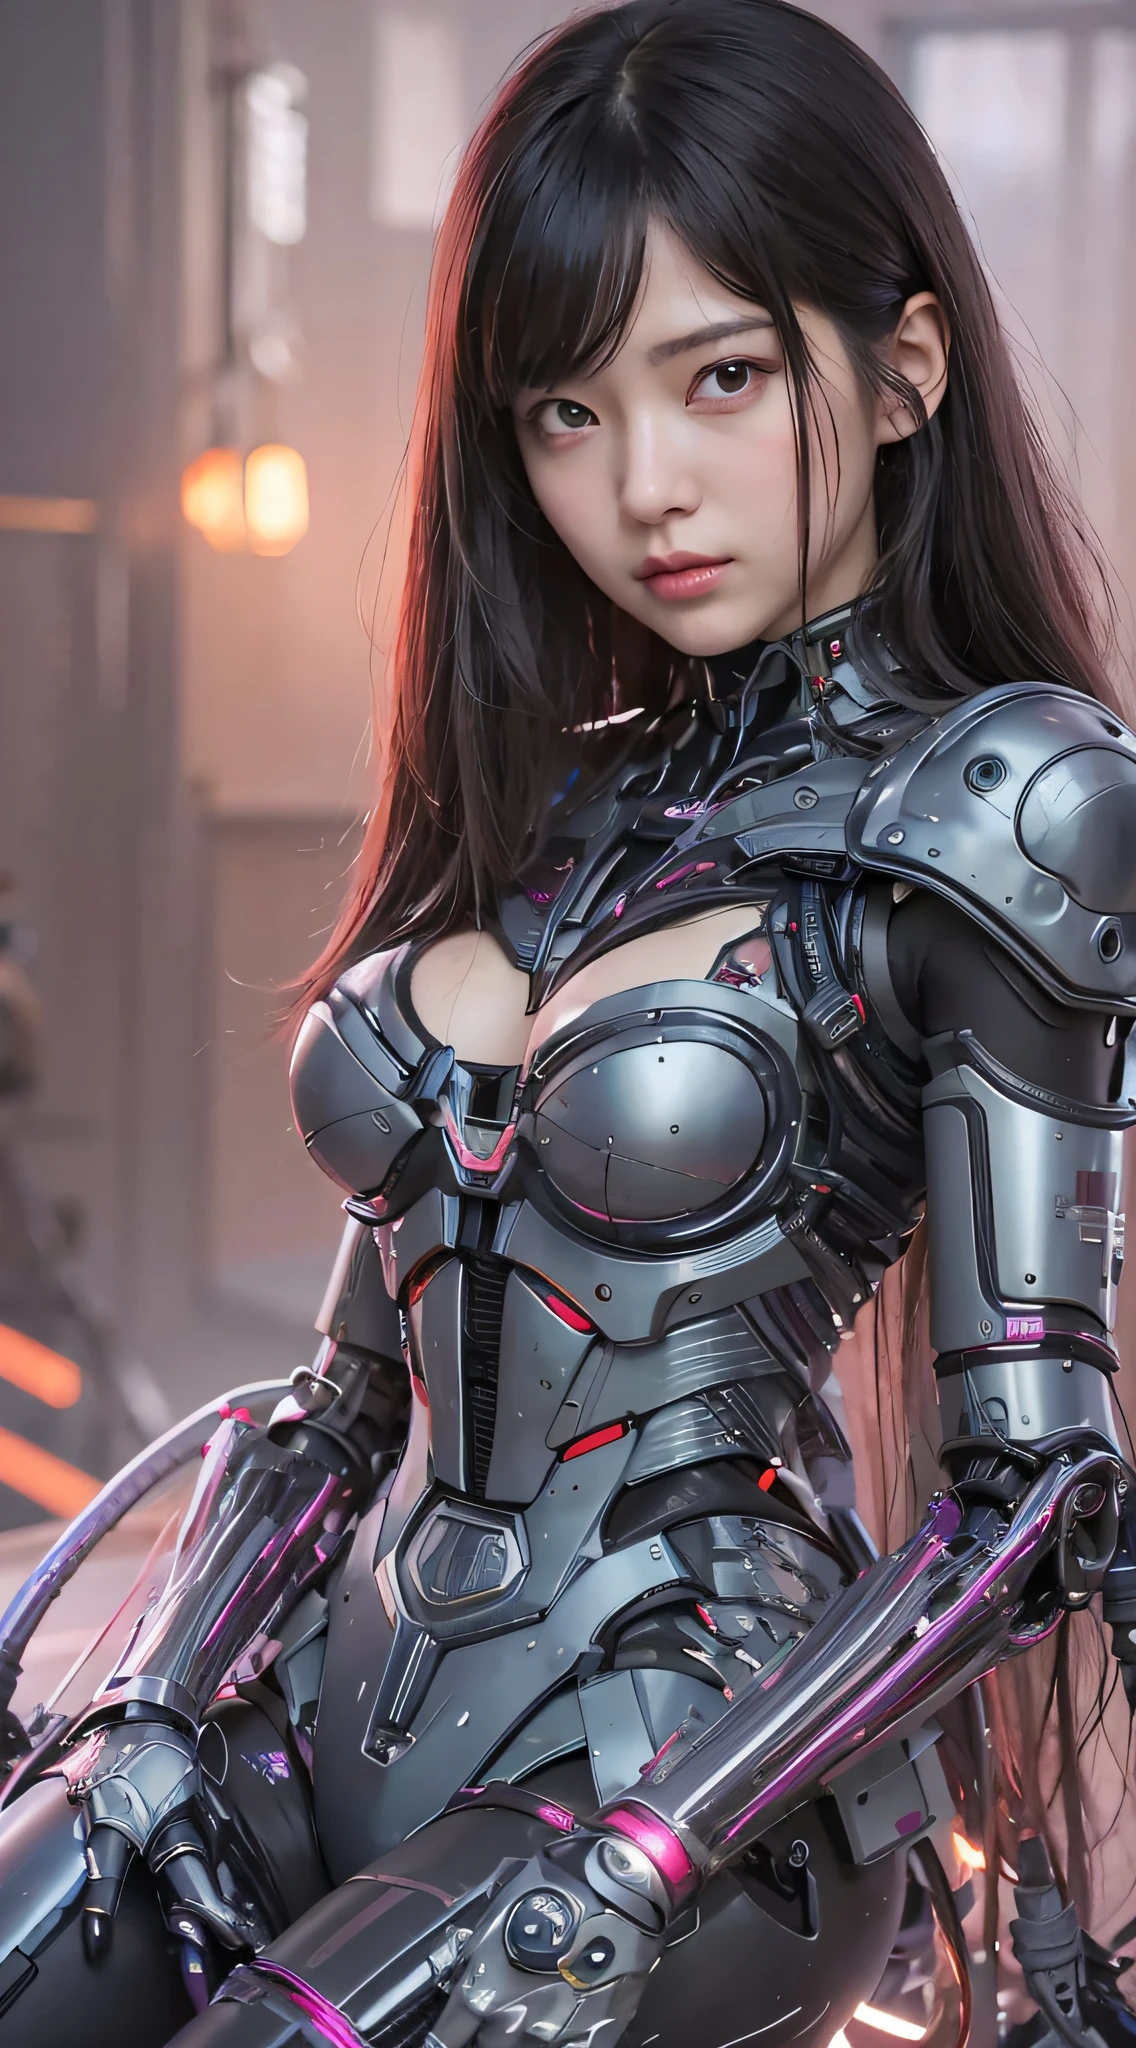 eine Nahaufnahme einer Frau in einem futuristischen Anzug mit einer Waffe, Mädchen in Mecha-Cyber-Rüstung, schönes Cyborg-Mädchen, Cyborg girl, süßes Cyborg-Mädchen, Cyborg - Asiatisches Mädchen, cyberpunk anime girl mech, perfekte Anime-Cyborg-Frau, female cyberpunk anime girl, perfektes Android-Mädchen, an oppai cyberpunk, weiblicher Cyborg, cyberpunk anime girl, schönes Cyberpunk-Mädchen, junge Cyborg-Dame